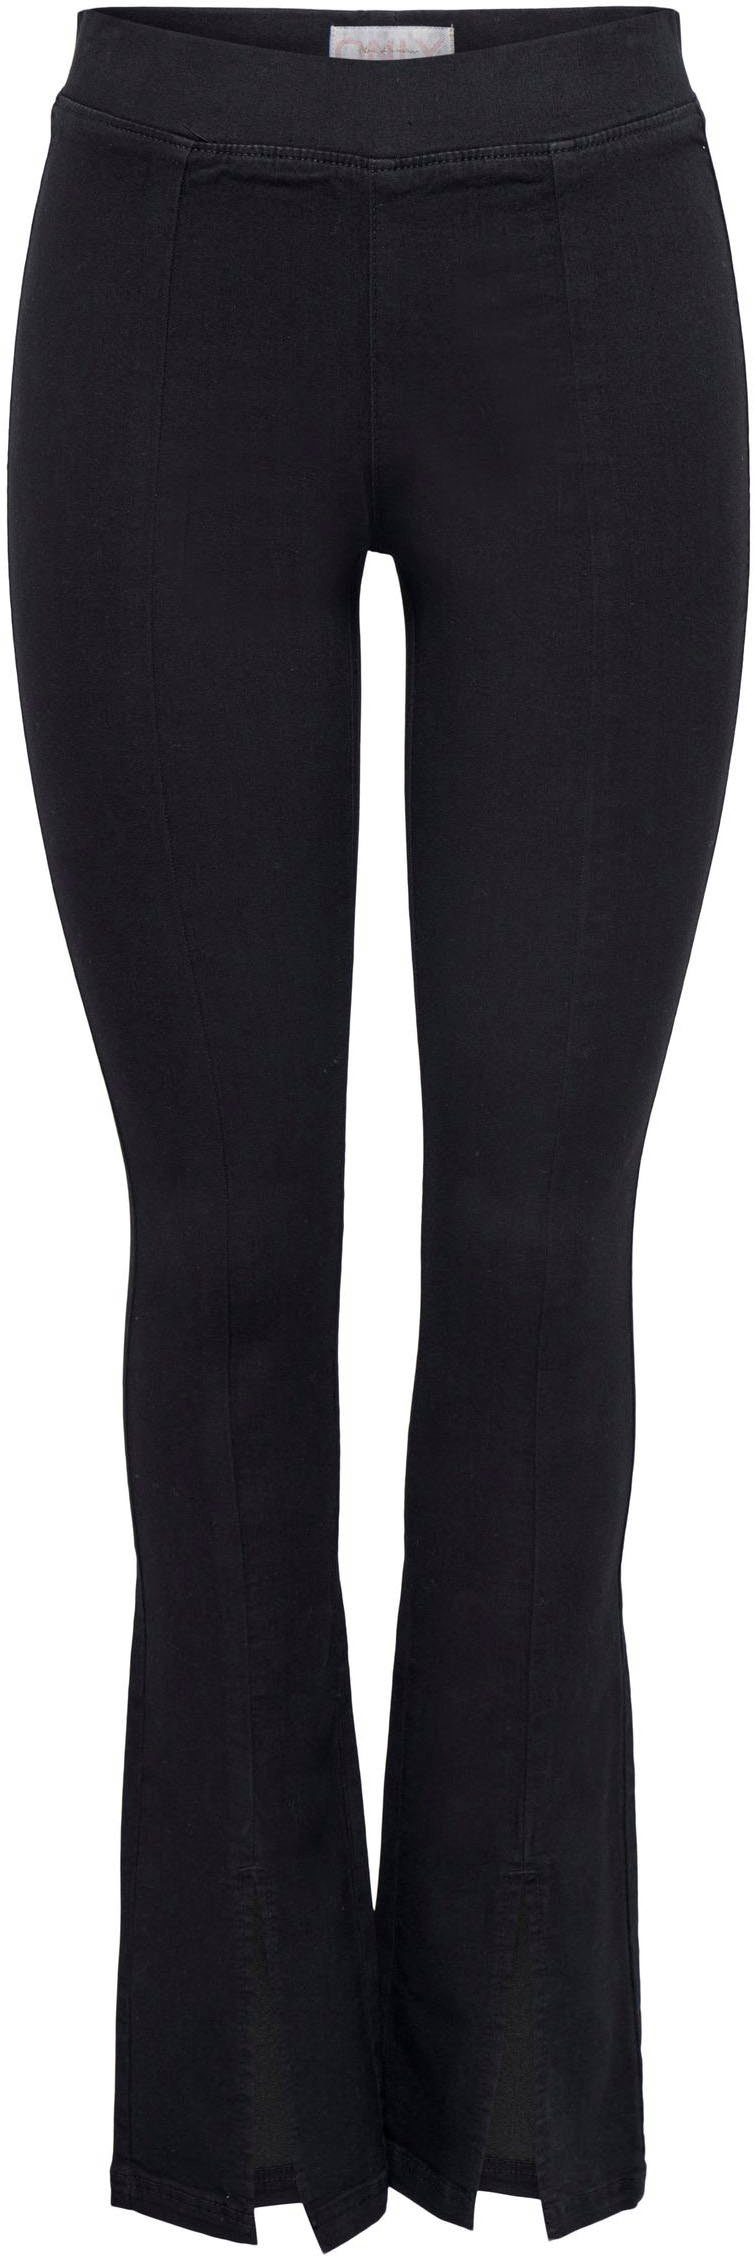 ONLY Skinny-fit-Jeans Passform FRONT PIMBOX, ONLPAIGE mit Aus eine elastischer Stretch-Anteil für HW DNM optimale SLIT Baumwollmischung SKINNY